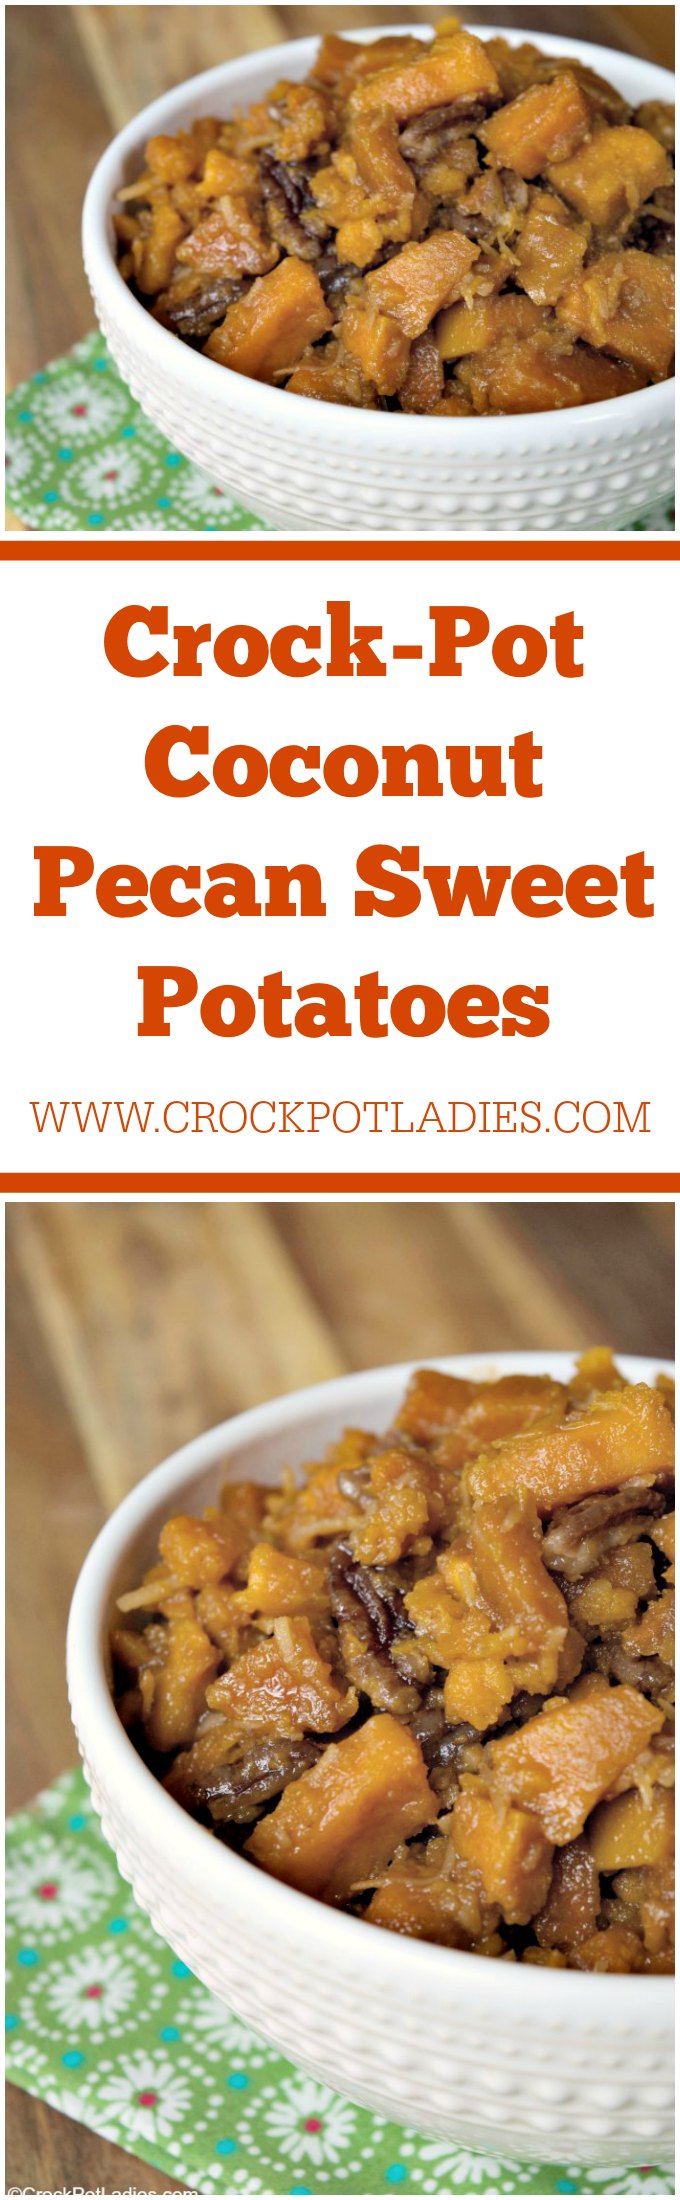 Crock-Pot Coconut Pecan Sweet Potatoes